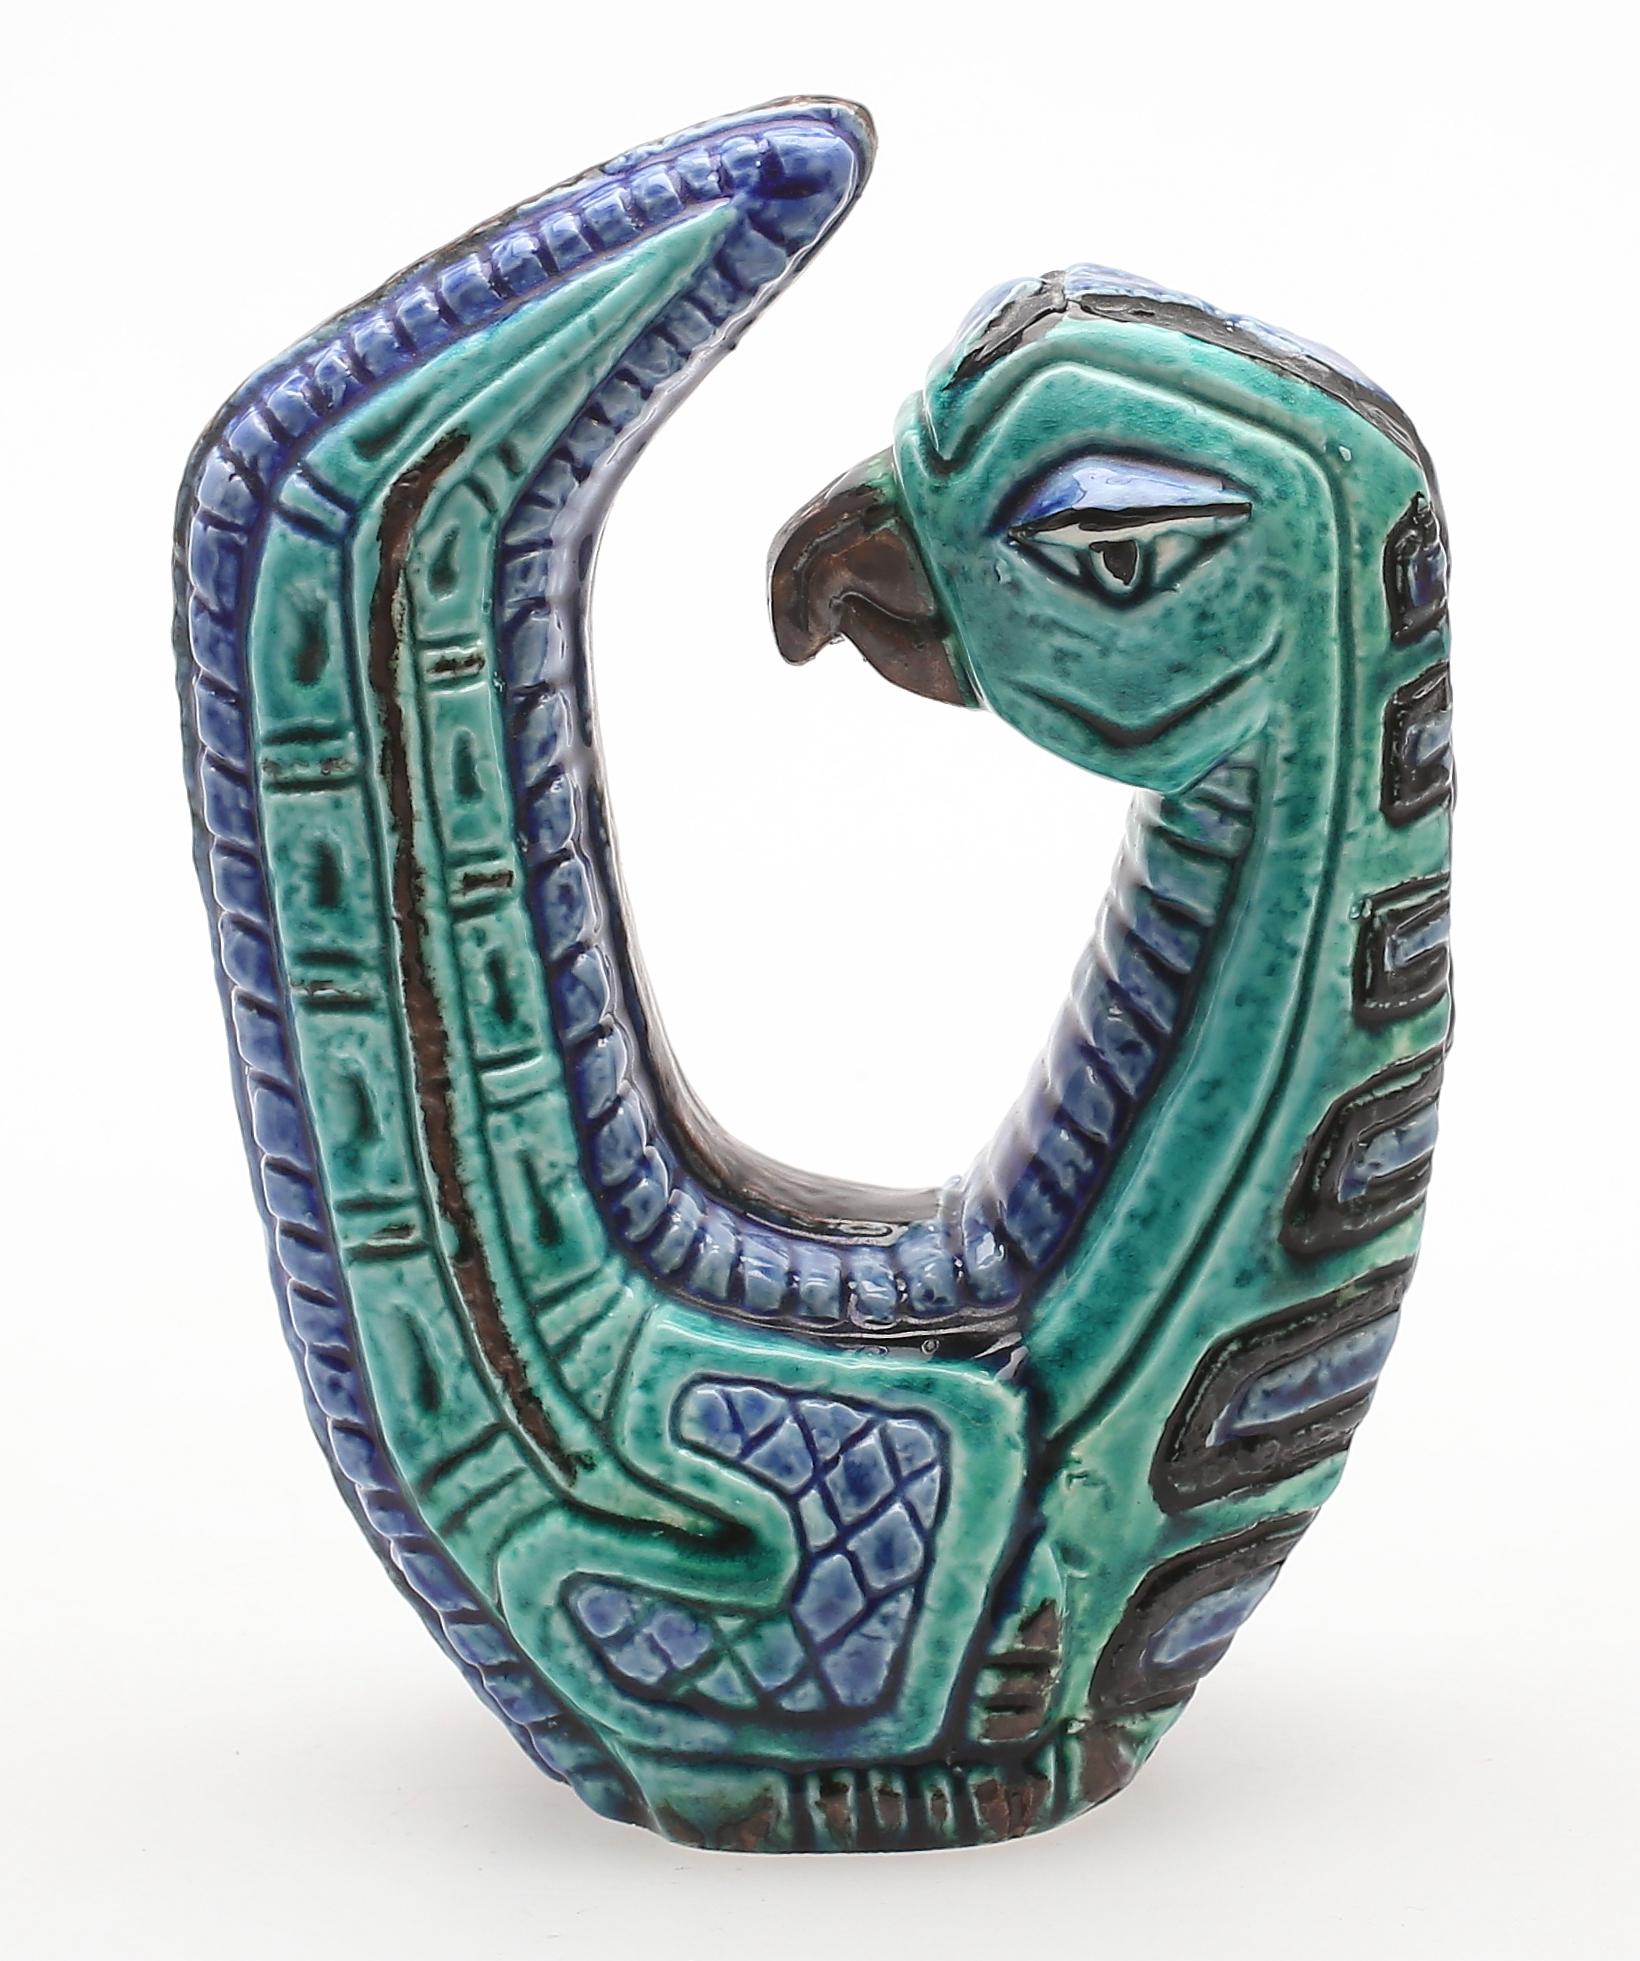 Cet oiseau a été créé par l'éminent artiste Gunnar Nylund dans les années 1960. Fabriquée par Rörstrand, la célèbre entreprise de céramique suédoise, la sculpture porte en elle l'héritage du design et de l'artisanat scandinaves.

Elle représente un